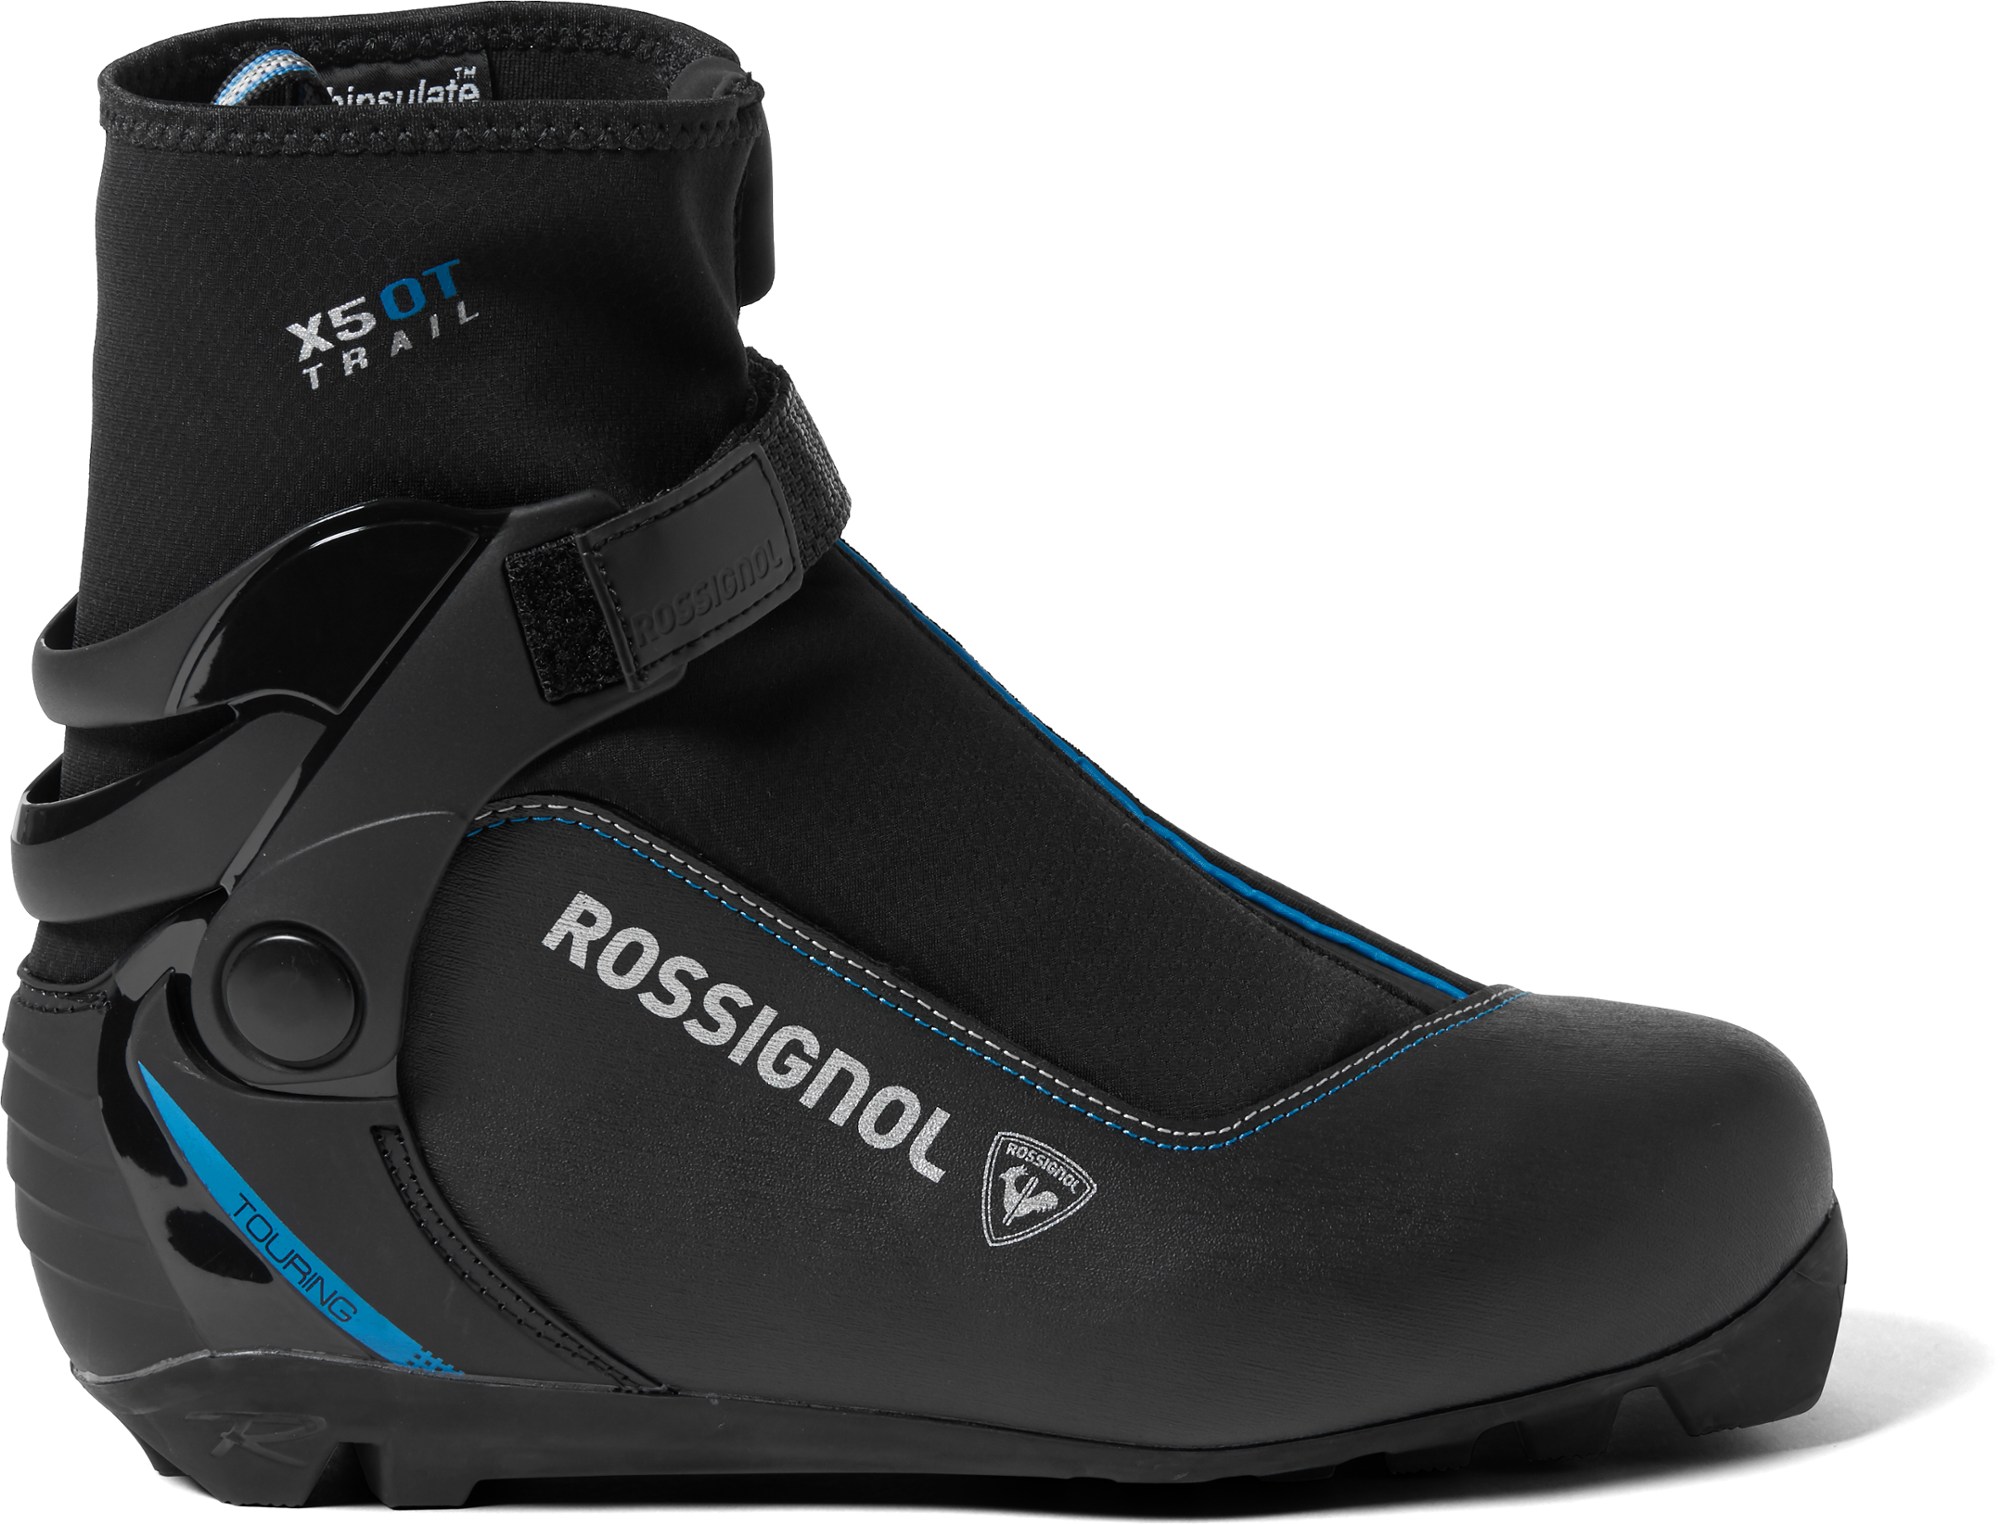 Ботинки для беговых лыж X-5 OT FW — женские Rossignol, черный